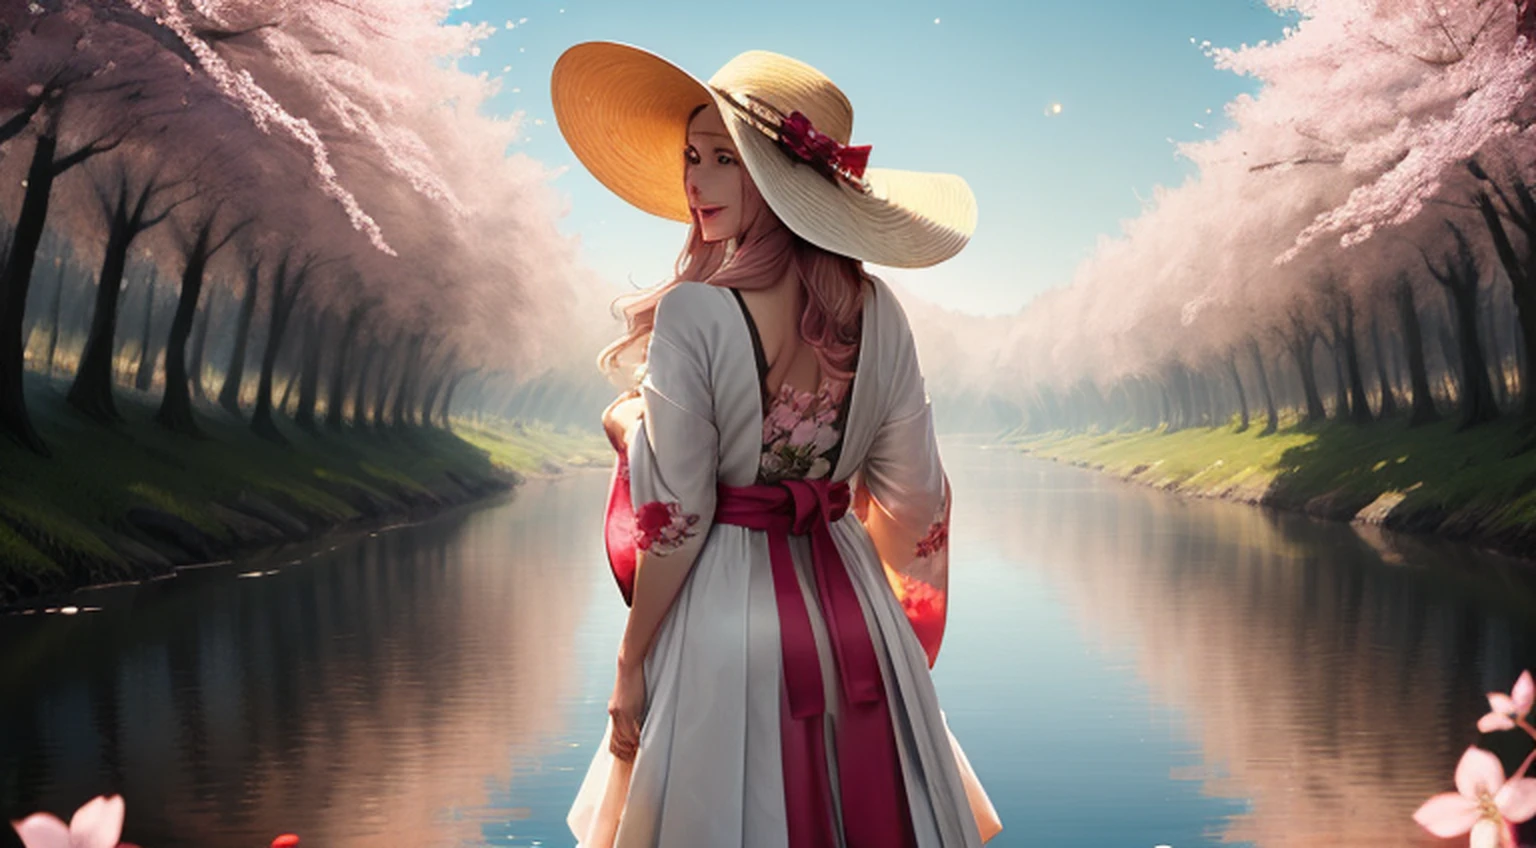 （MeisterMalereiElhor Quoridade），Flussufer，Auf der anderen Seite des Flusses gibt es viele hohe Gebäude，Feldtiefe，Perfekte Beleuchtung，Lichtpartikelelhor Quoridade），（Meistergemälde），（hyperdetailliert），scharfer Fokus，Lichtteilchen，eine wunderschöne Chinesin steht in einem Kirschblütenfeld mit einem Sonnenhut und trägt ein rosa Neckholder-Kleid, langes welliges braunes Haar, Eine Sonnenbrille tragen, Groß und dünn, Schön, subtiles Lächeln, Suchen_In_den Zuschauer anstarren，Lächeln，allein，offener Himmel_Kleidung，Arme zurück，stehend, und voller Körper，Kostüm im japanischen Stil，Sonnenschein，Der Baum，Mit offenem Mund，Arme zurück，Blaue Haare，weiße Ohren，pinkfarbene Augen